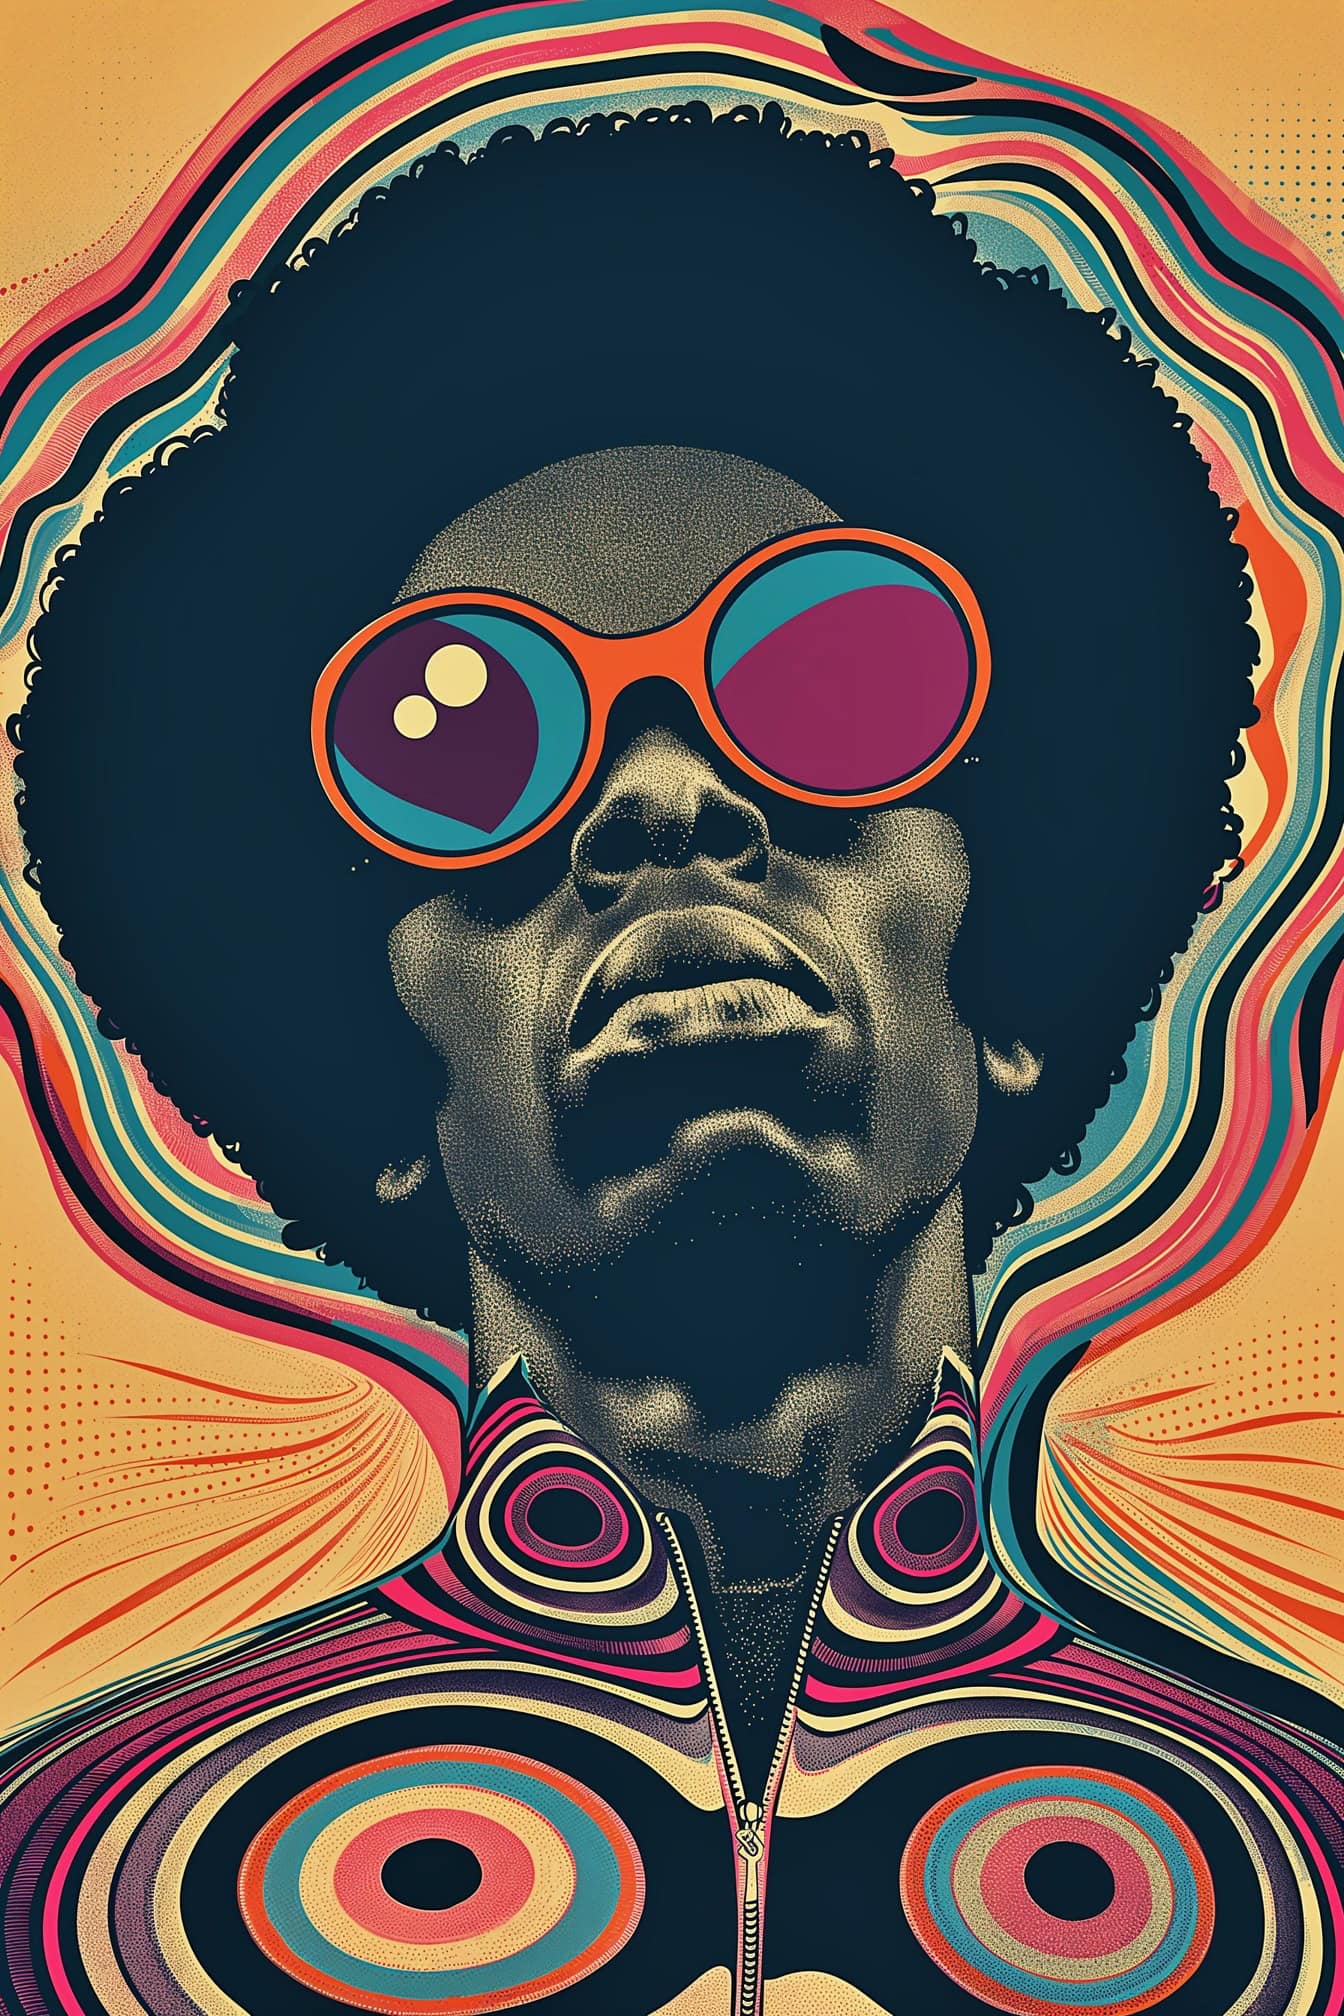 Un poster in stile funky afro di un uomo afroamericano che indossa occhiali da sole e con un’acconciatura afro